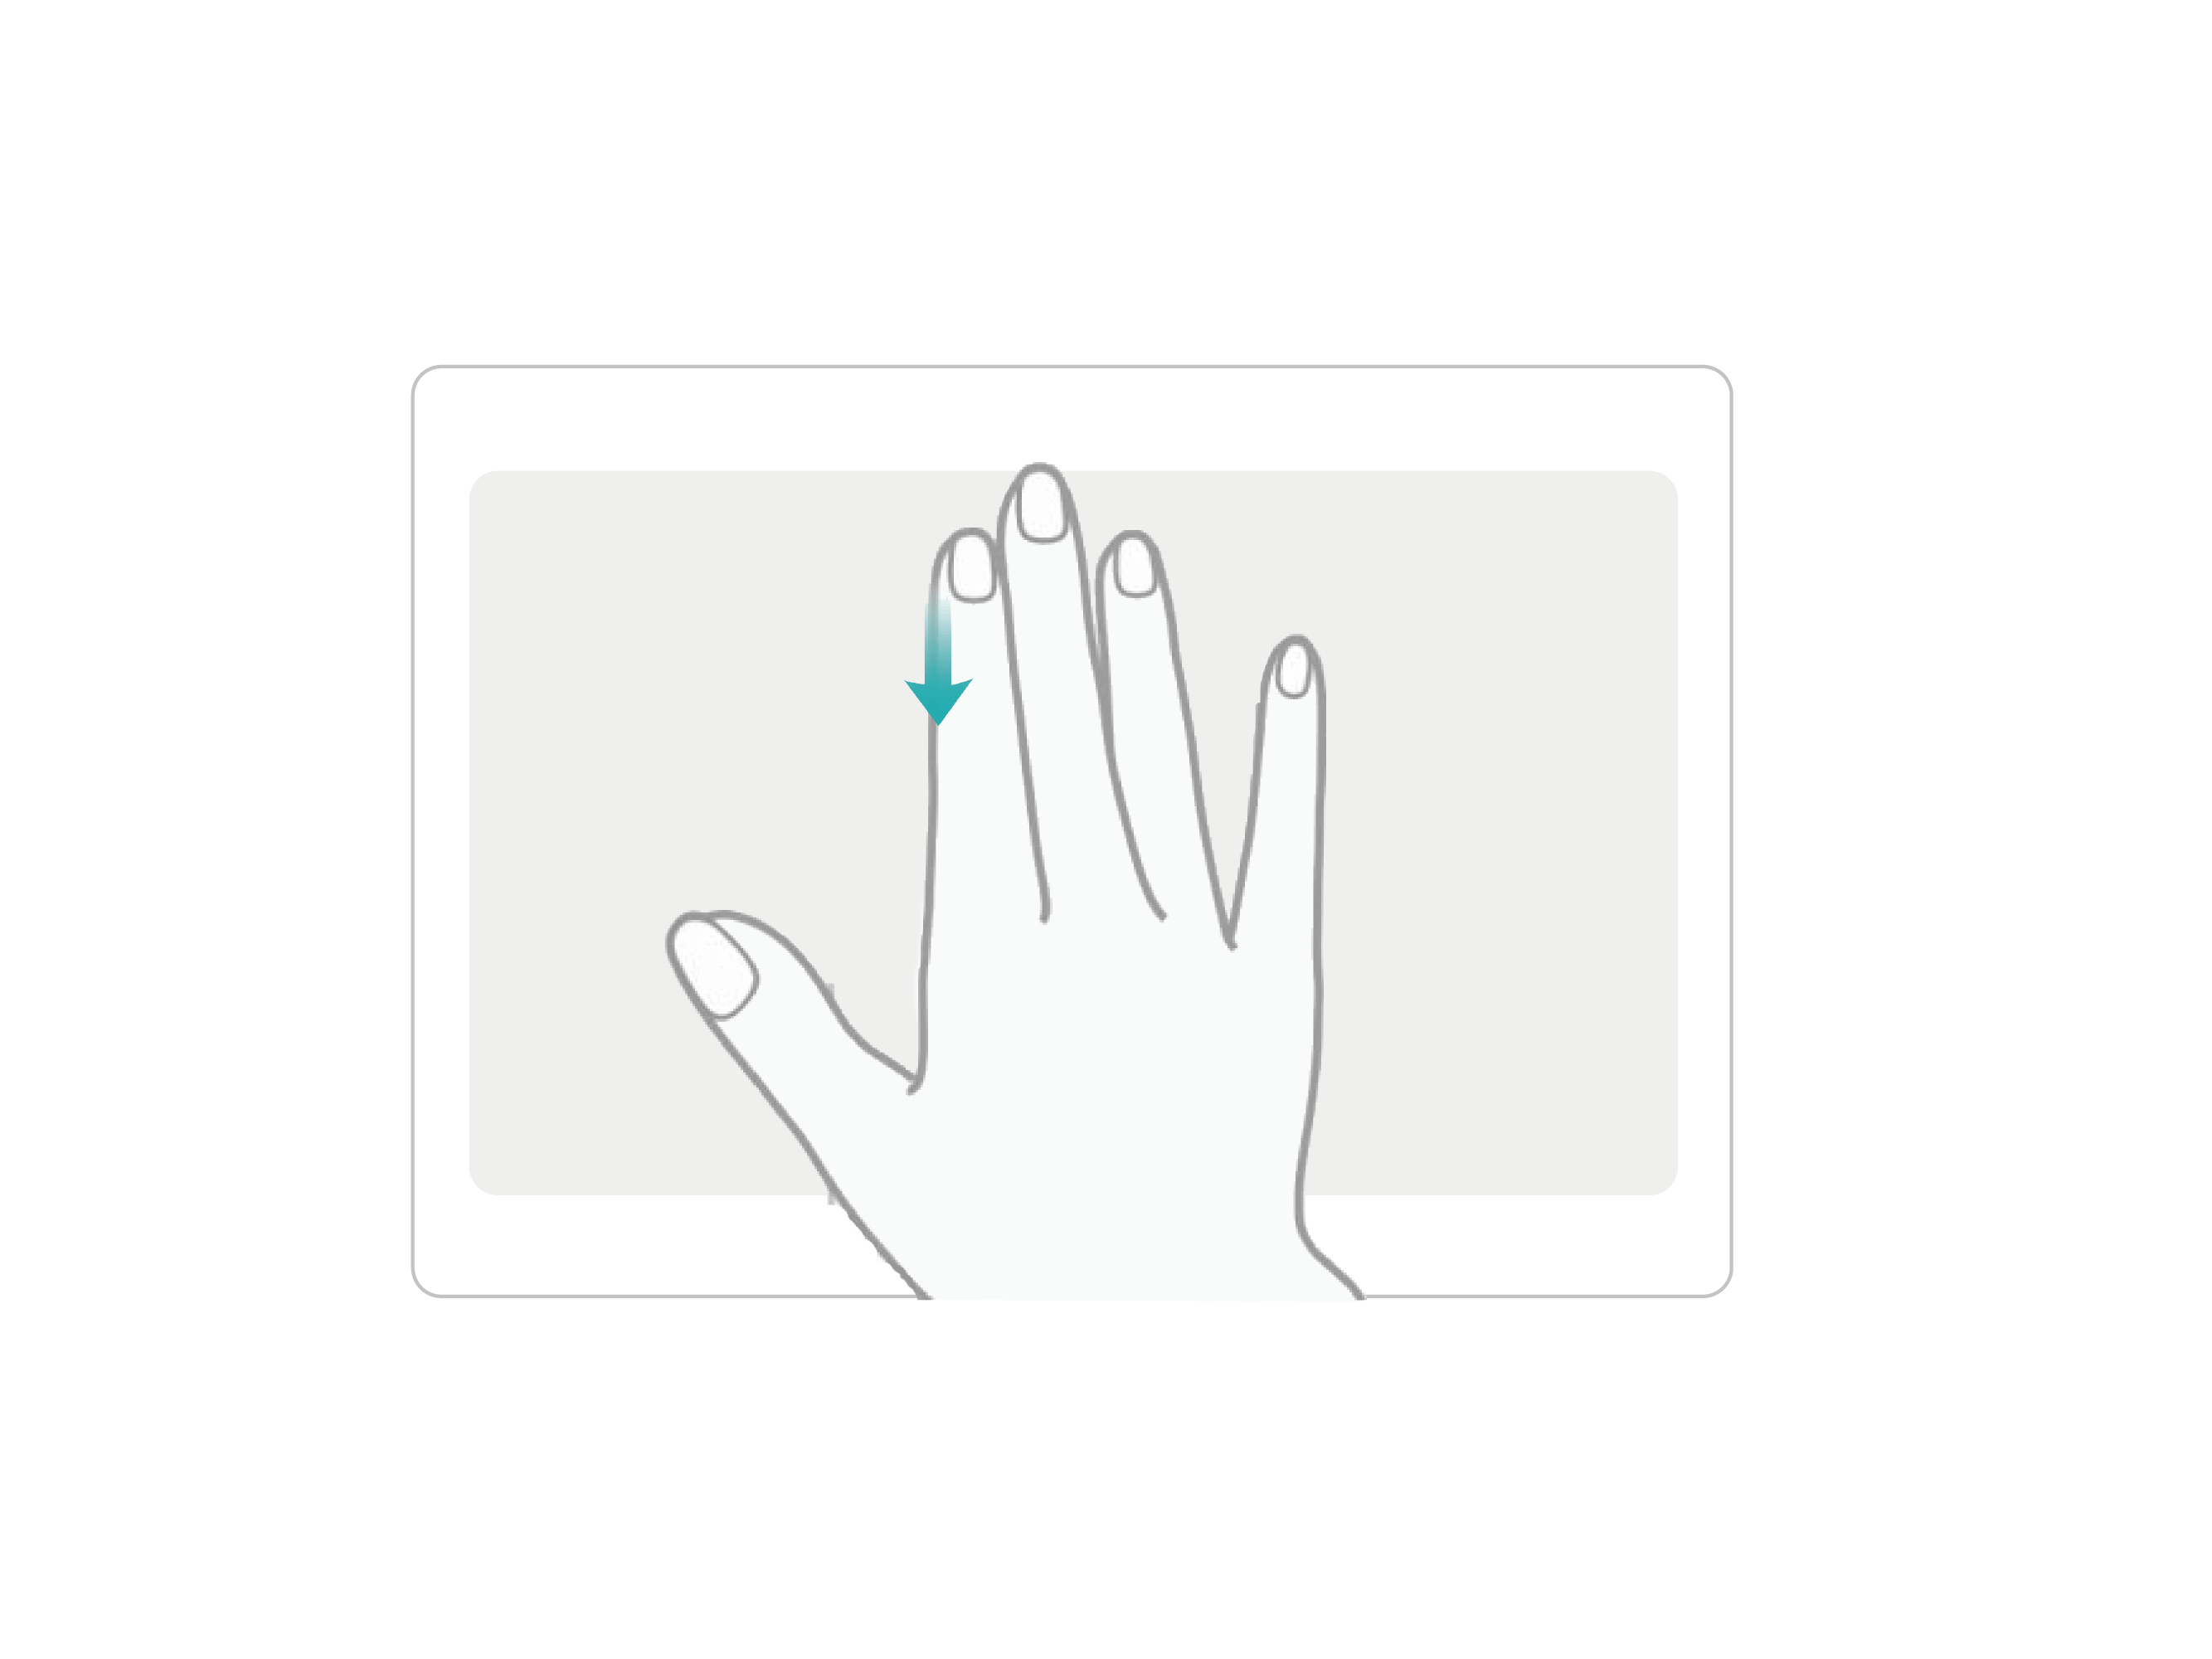 使用三指下滑截屏轻松操作手机 如何使用三指下滑截屏 如何截屏 华为官网